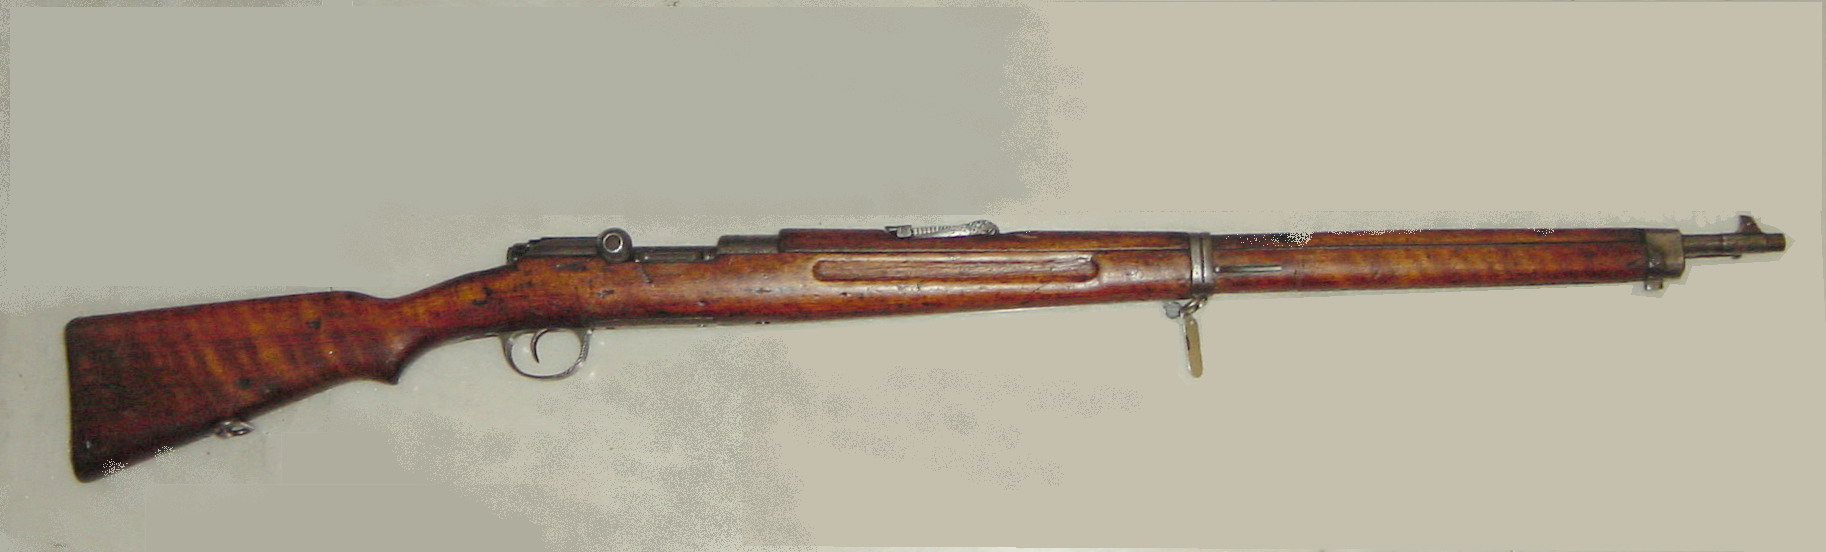 6.5 x54 mannlicher schoenauer rifle for sale